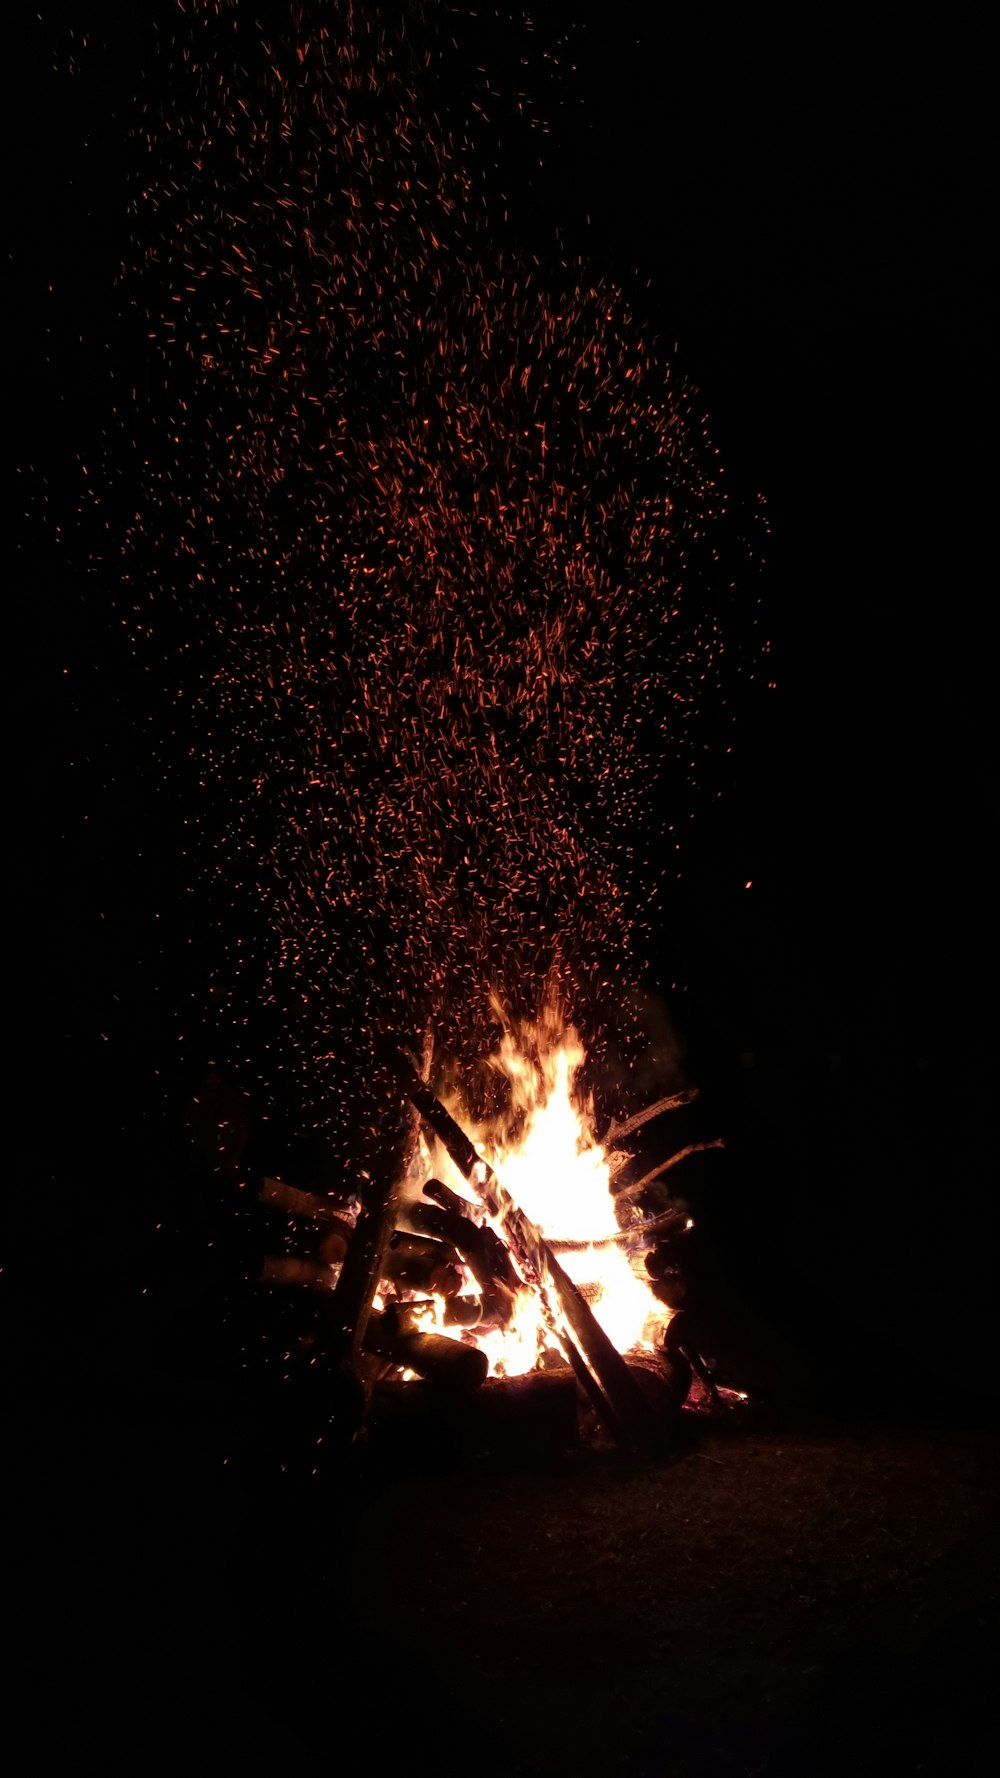 bonfire under starry night sky